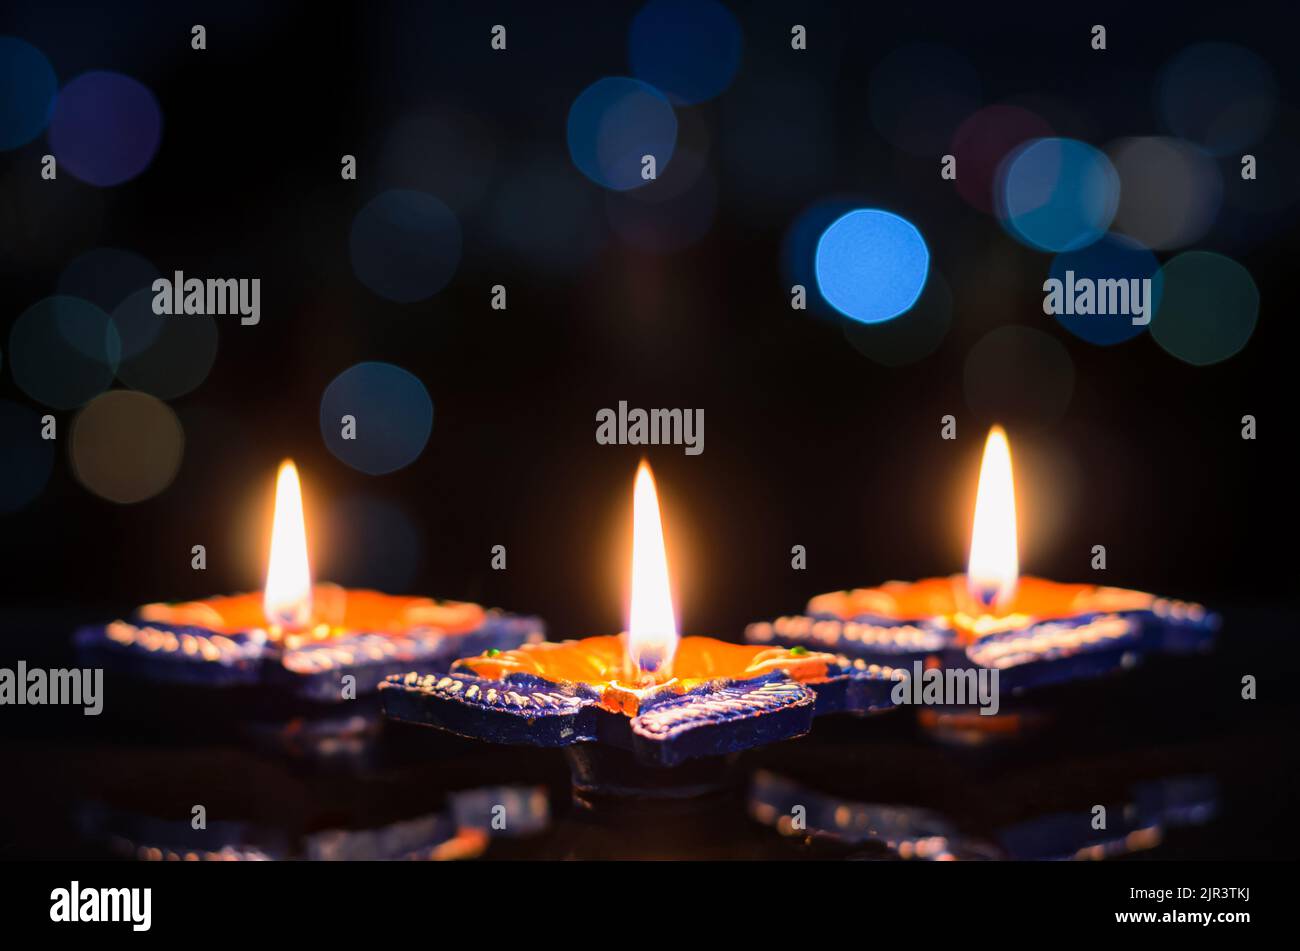 Fuoco selettivo sulla fiamma delle prime lampade diya in argilla illuminate su sfondo scuro con colorate luci bokeh. Concetto di festival Diwali. Foto Stock